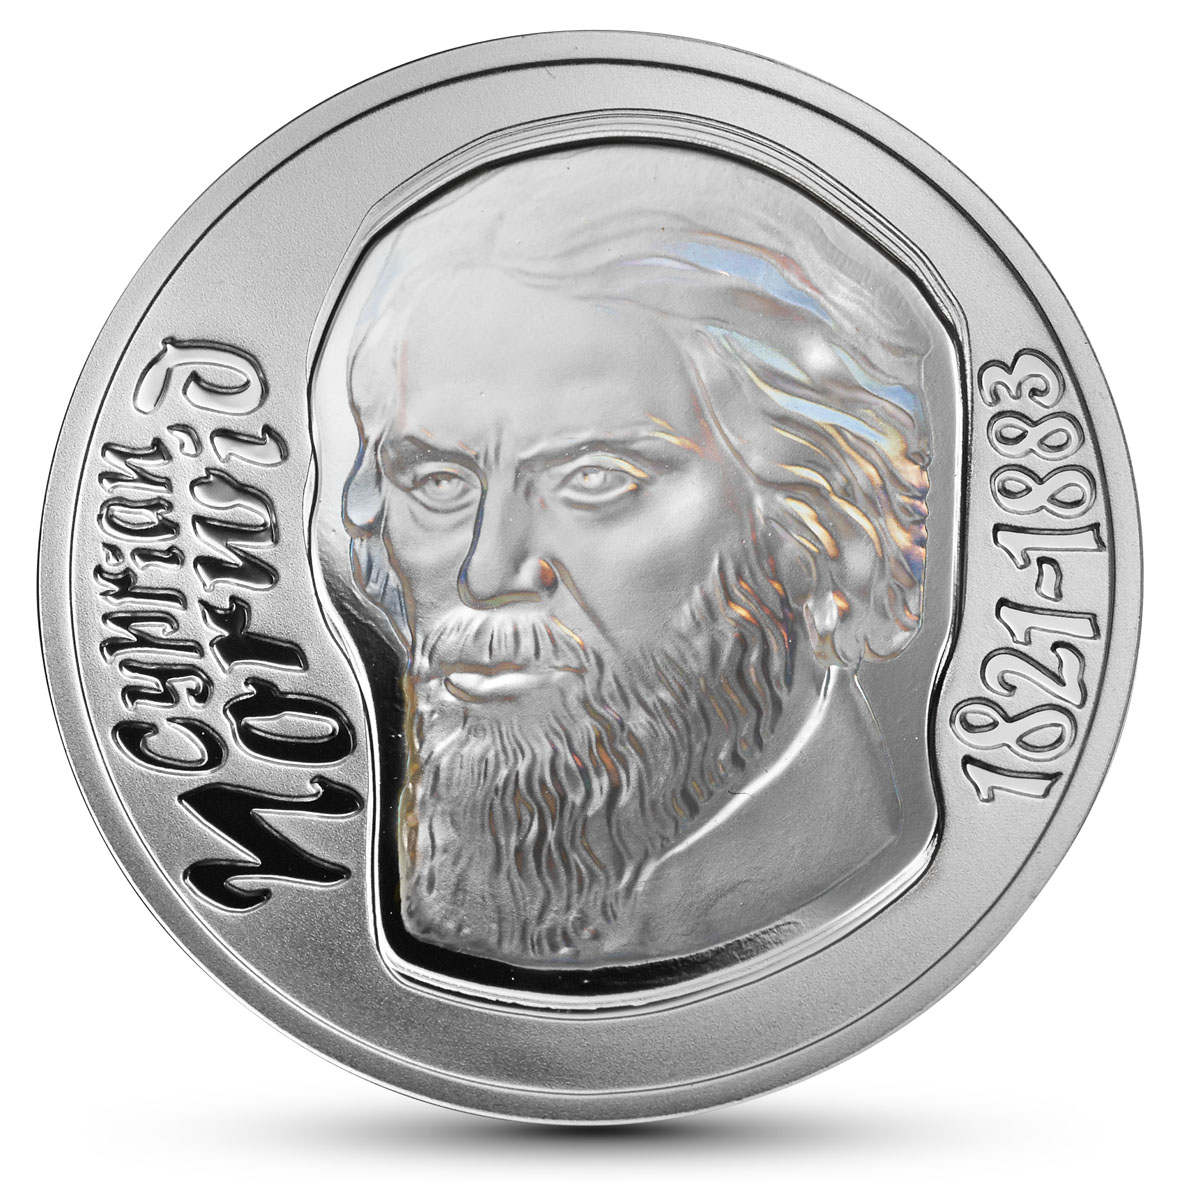 Rewers monety, koloru srebrnego - widoczna głowa starszego mężczyzny z bujną fryzurą i zarostem i napisy: Cyprian Norwid 1821-1883